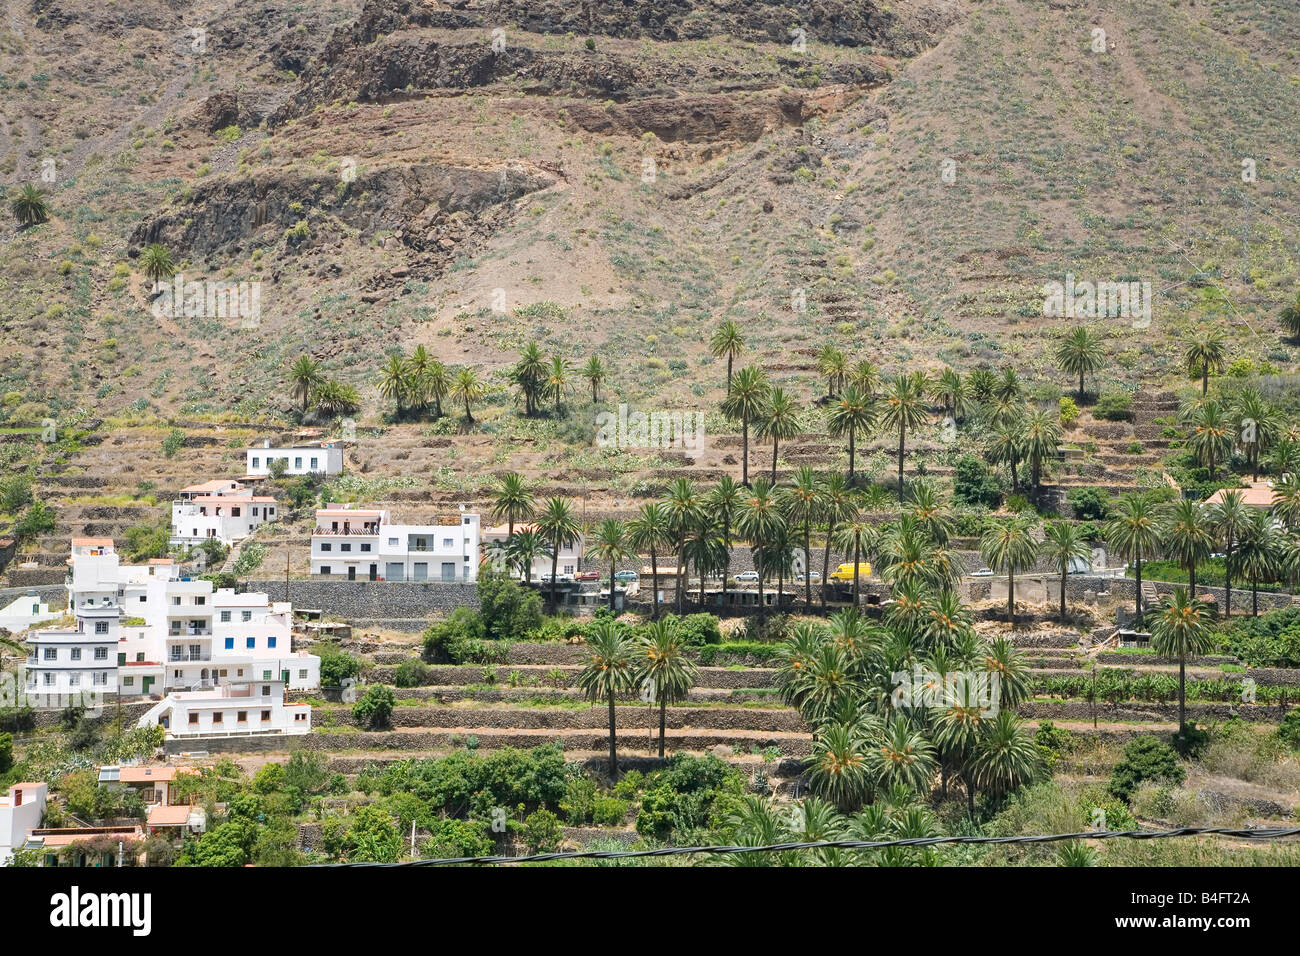 Terrazas de palmeras en la isla de La Gomera La Gomera está situada muy cerca de Tenerife y es una de las Islas Canarias Foto de stock